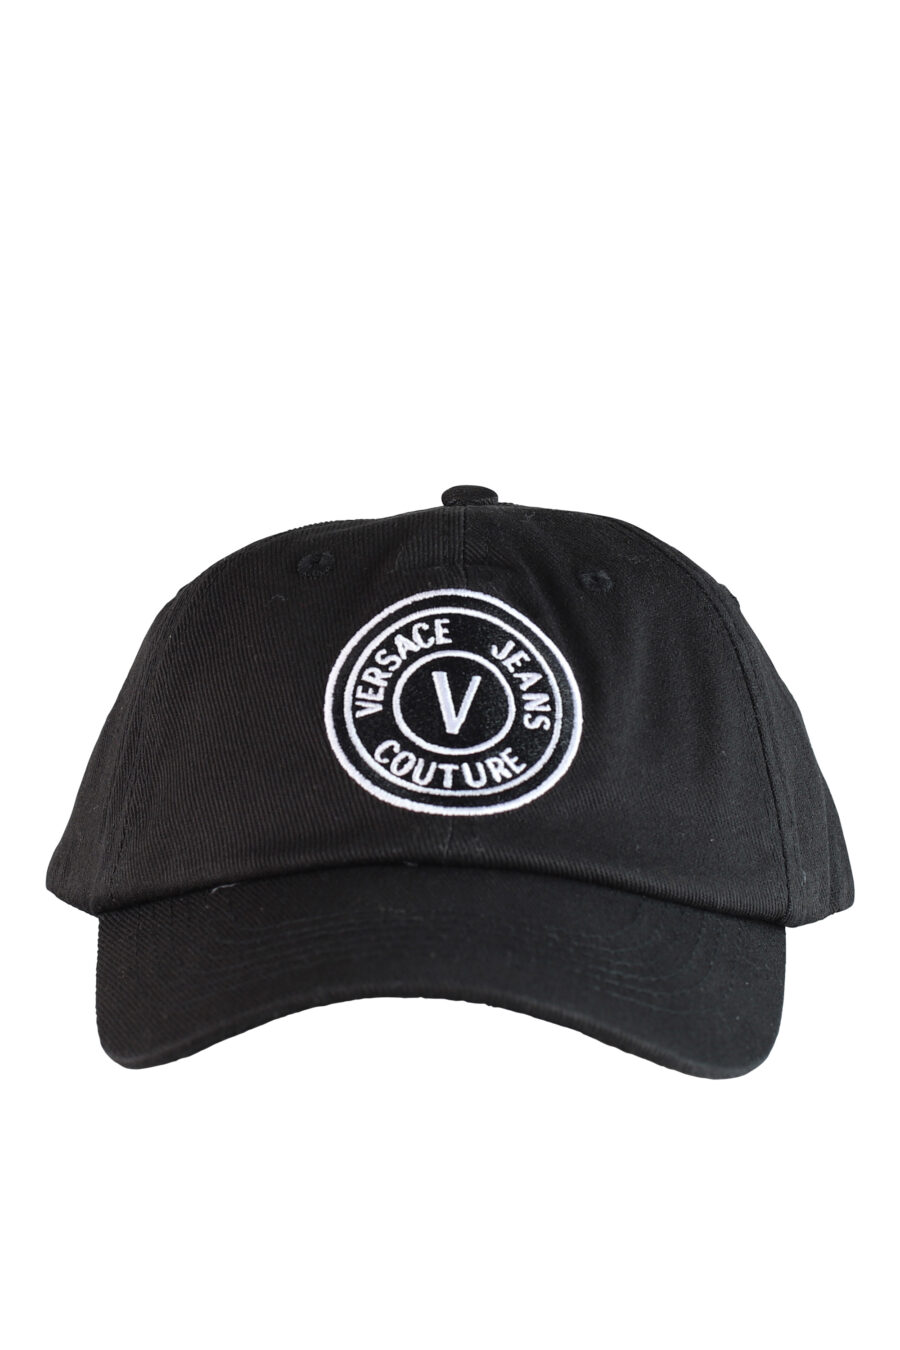 Gorra negra con logo circular blanco - IMG 0505